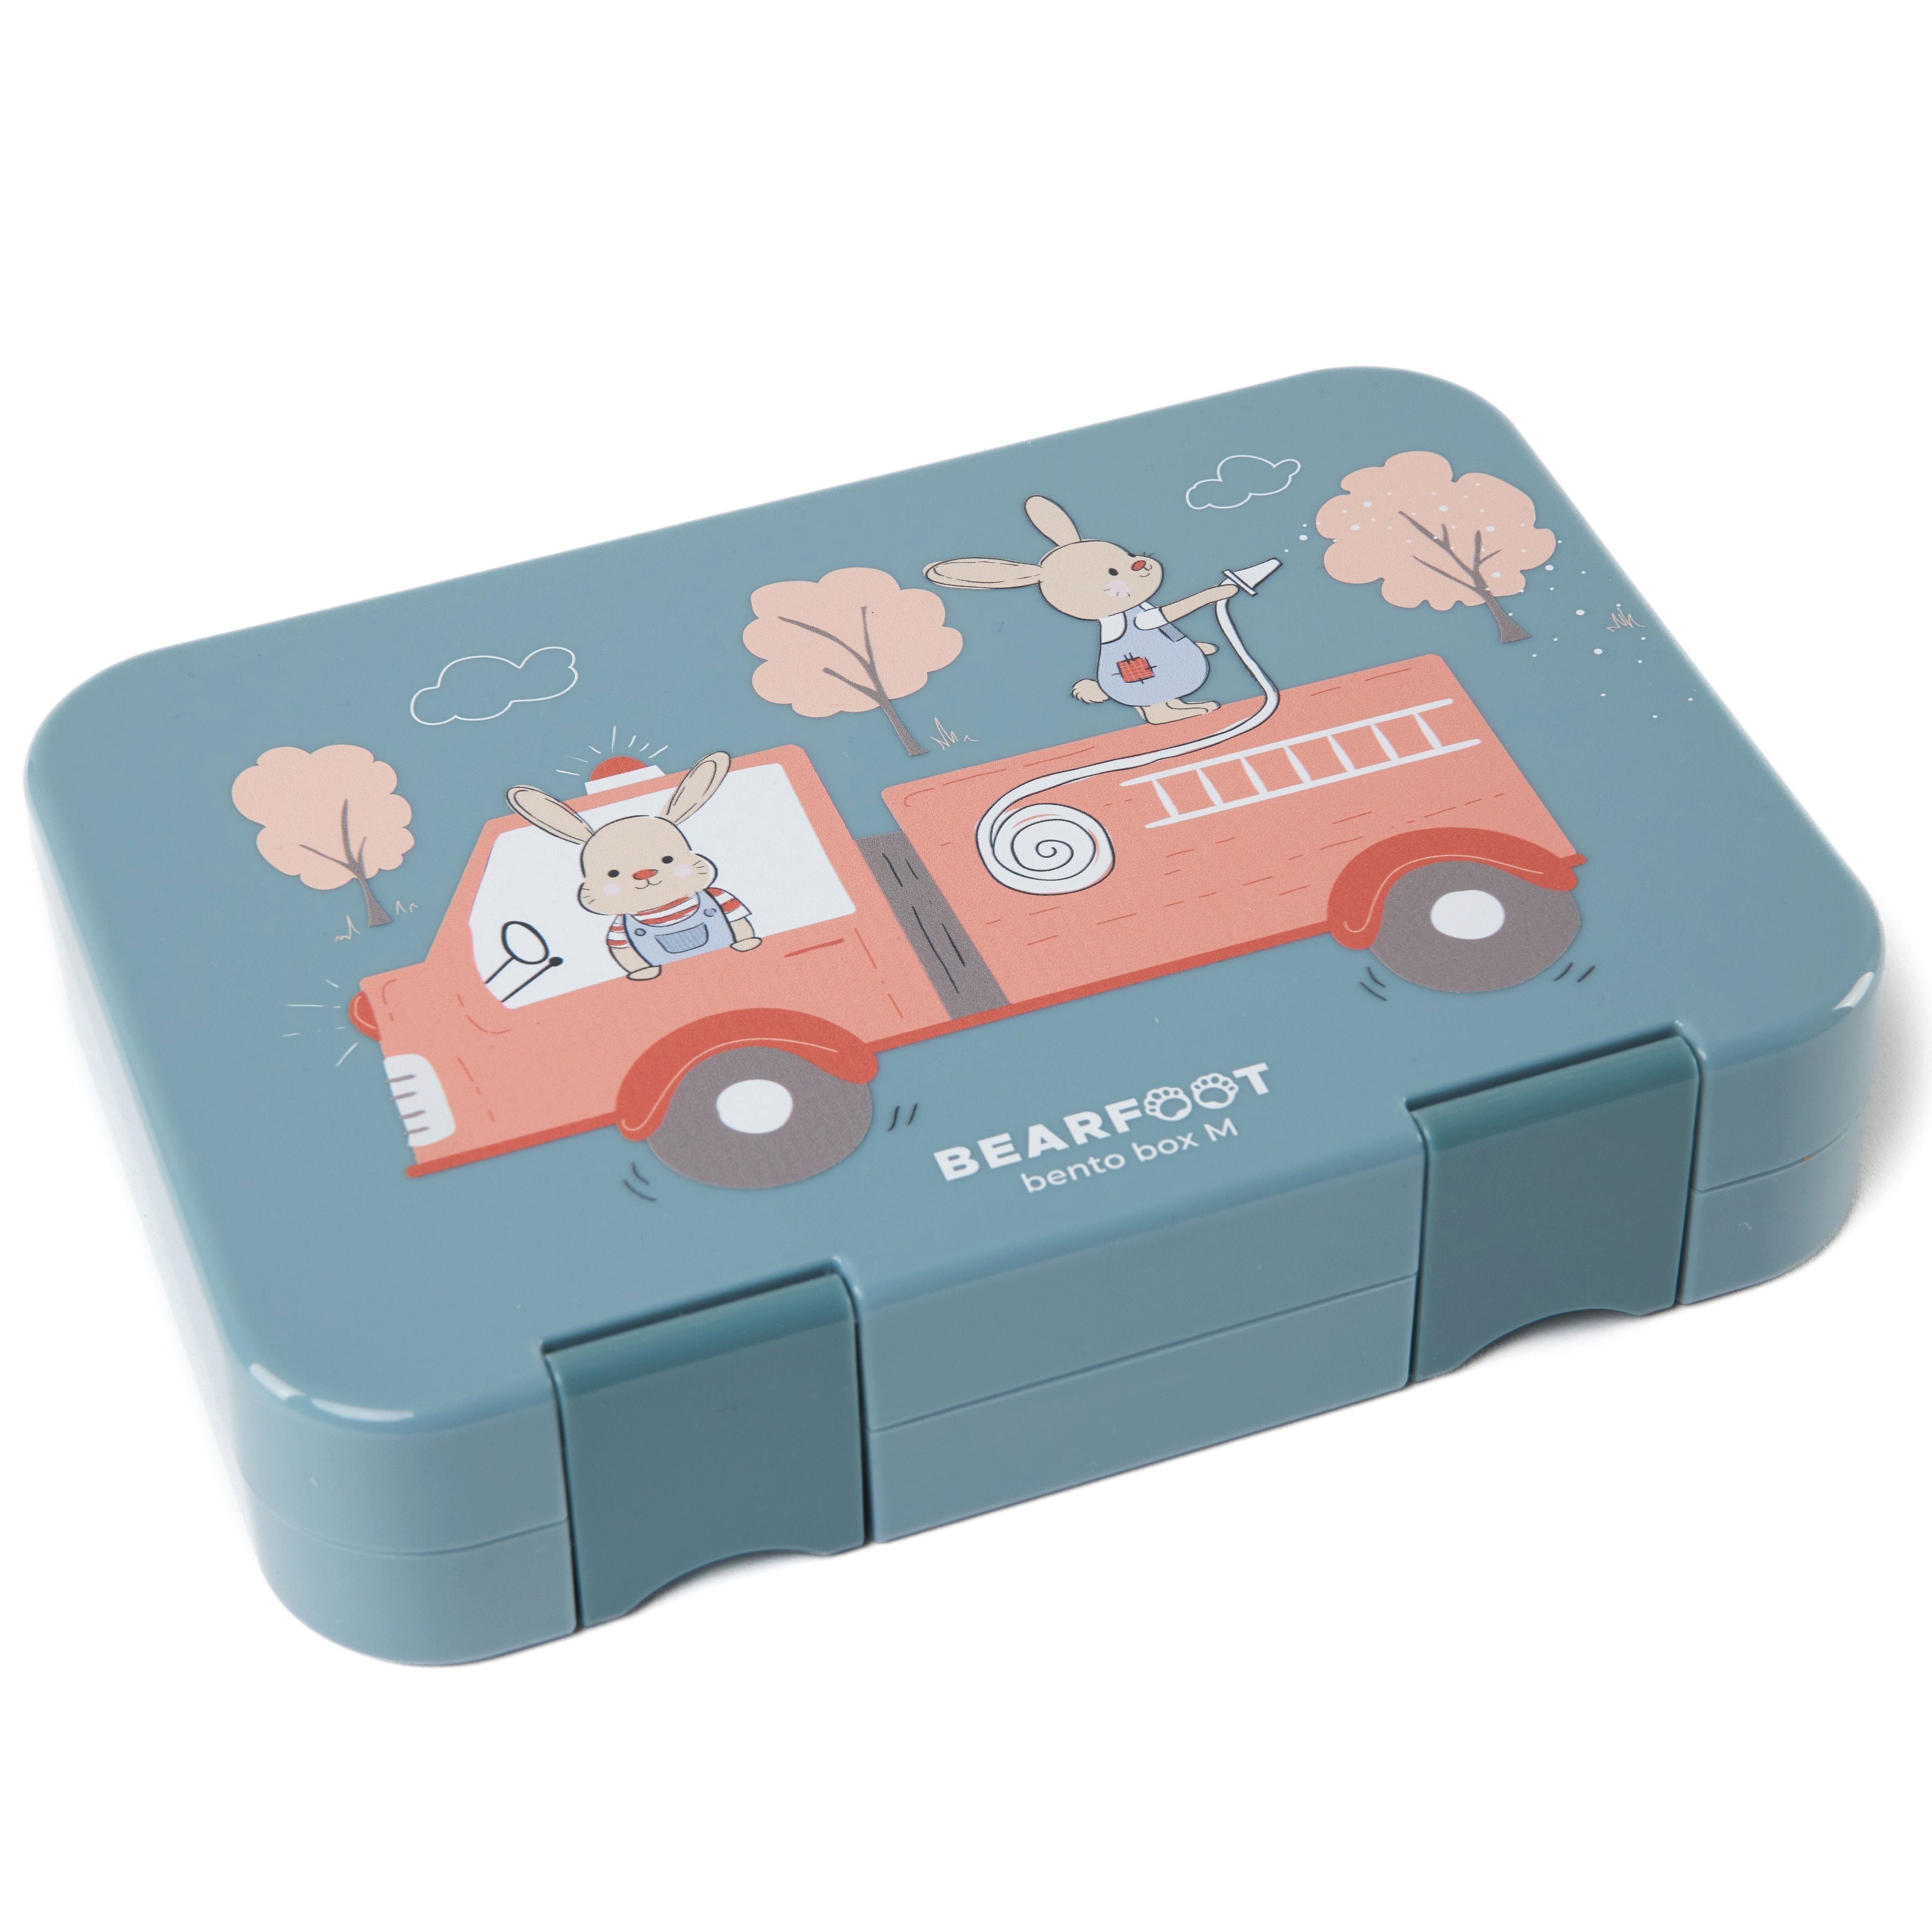 Brotdose Kinder Lunchbox, modular Bento handgezeichnete Fächern, - BEARFOOT Lunchbox Designs, mit box Feuerwehrhasen-blau Feuerwehr,